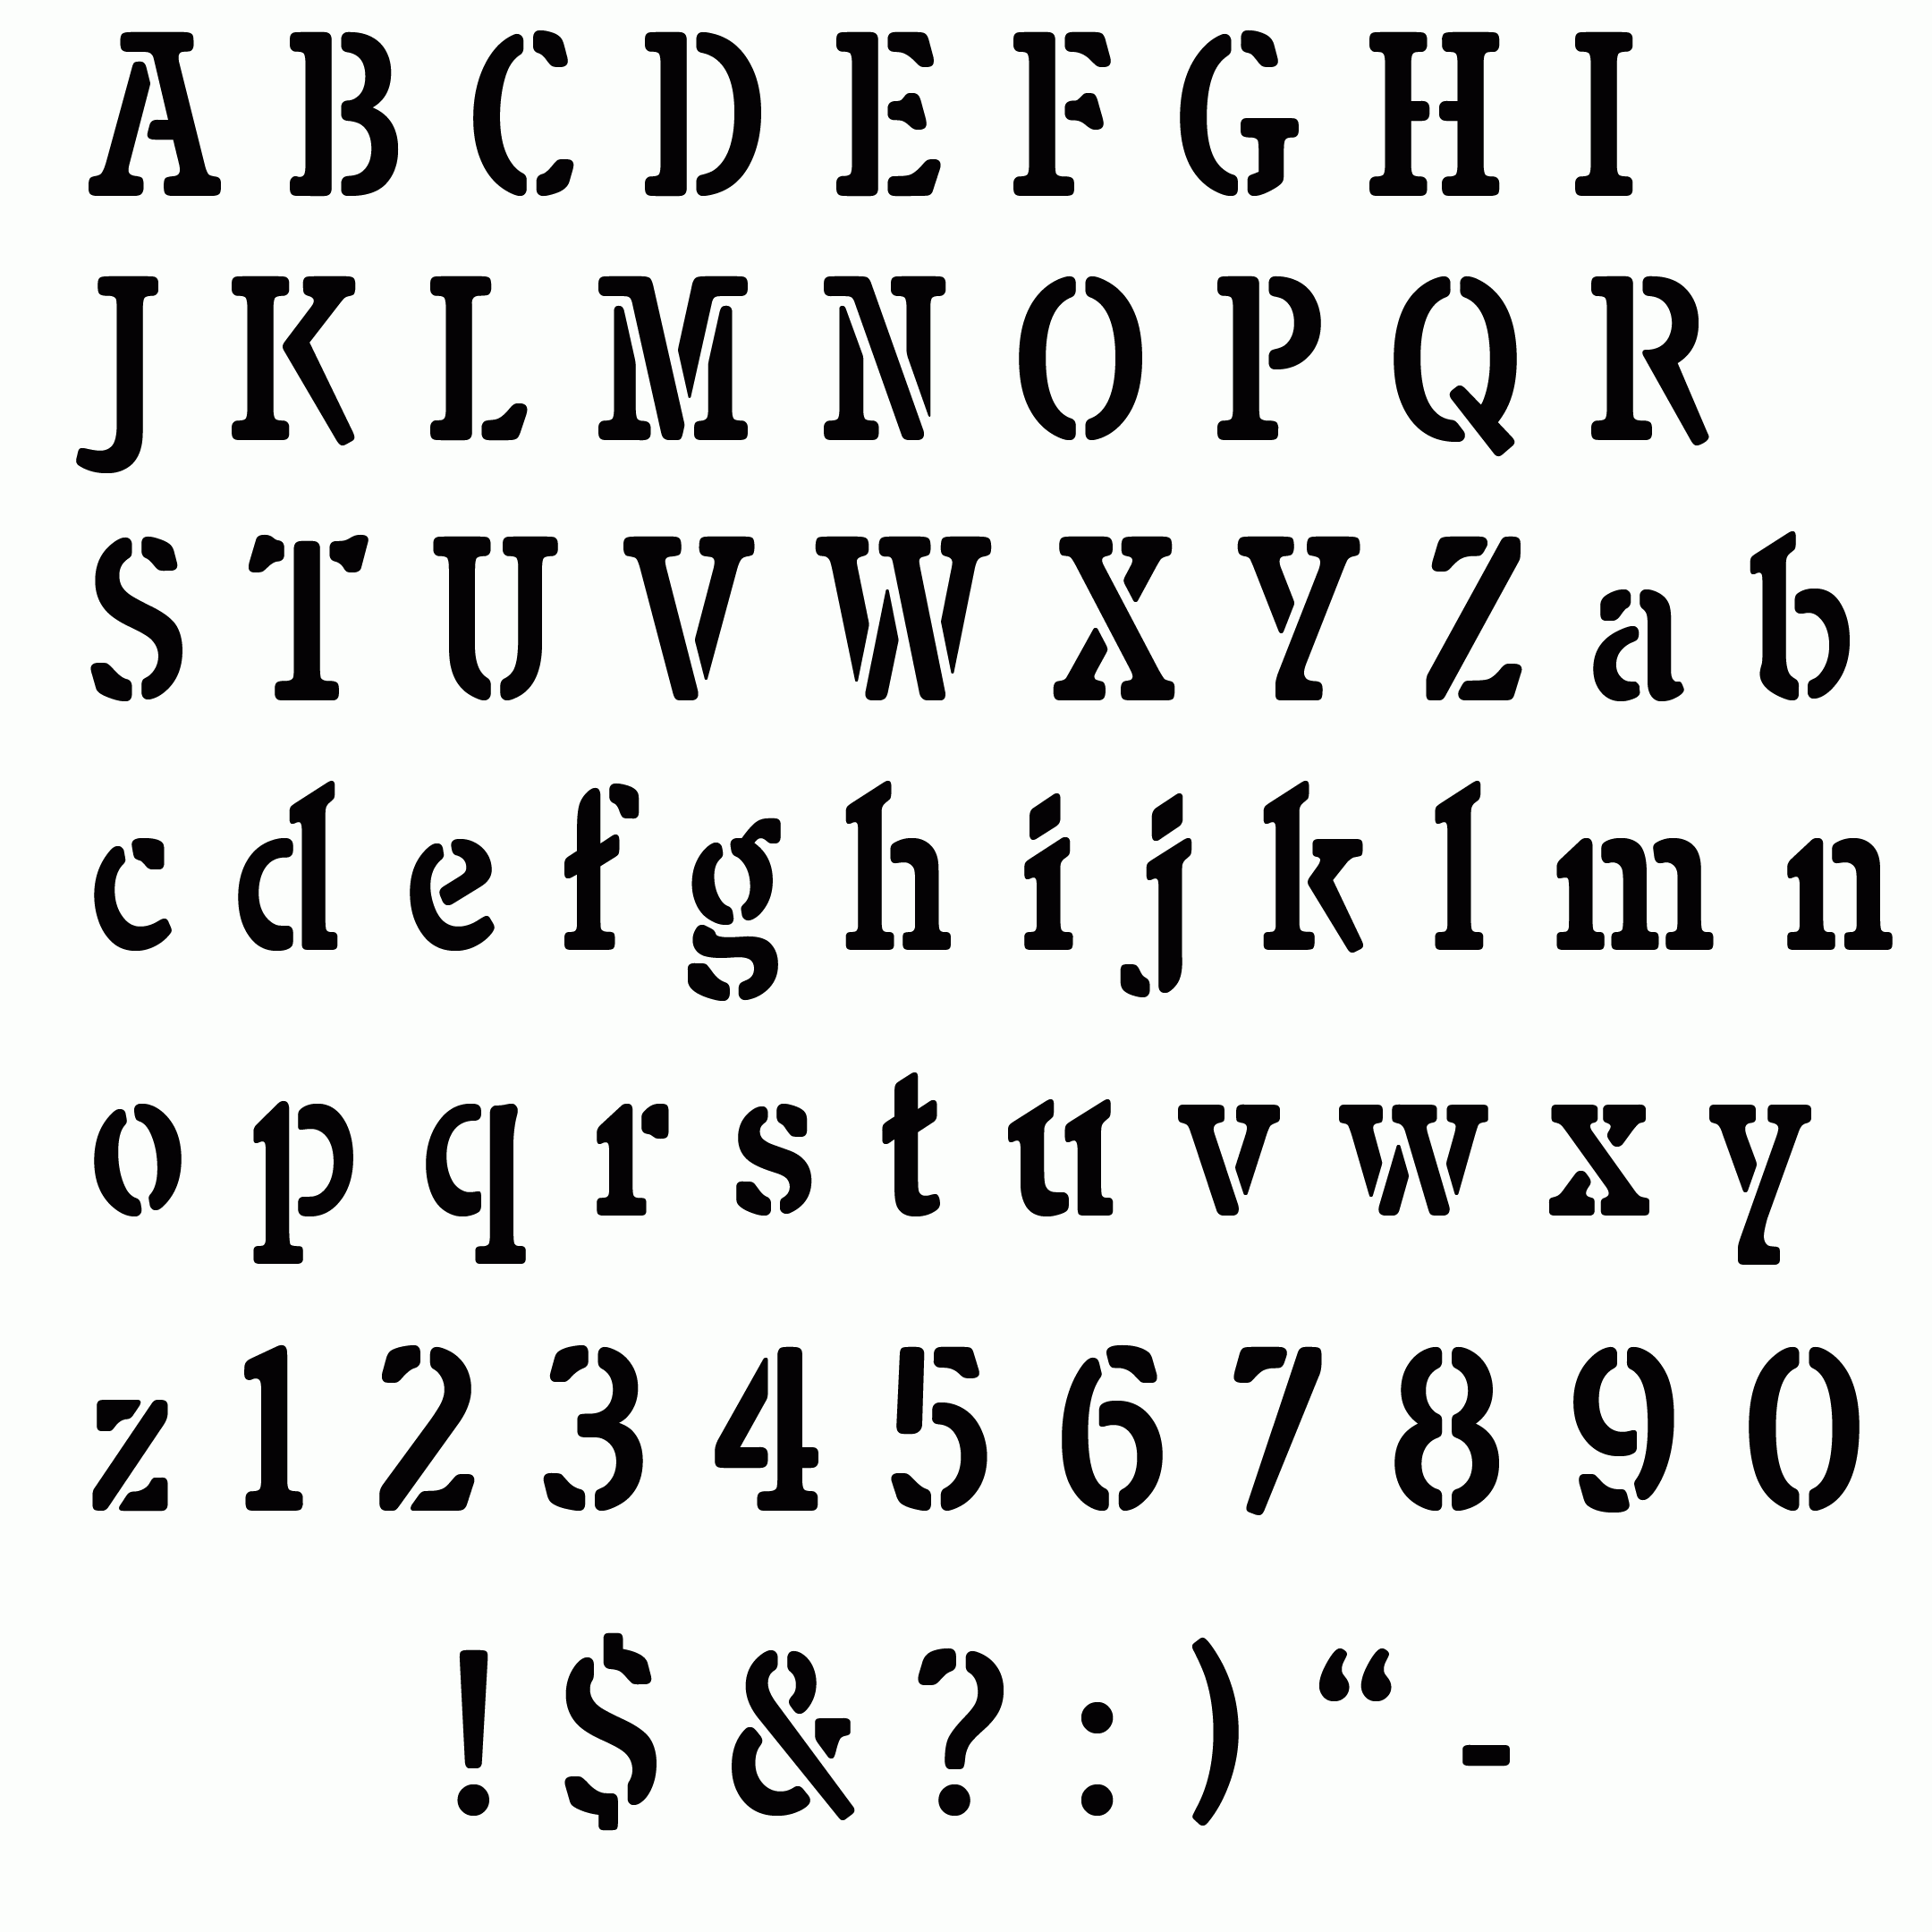 Free Alphabet Stencils Alphabet Stencils Letter Stencils To Print 